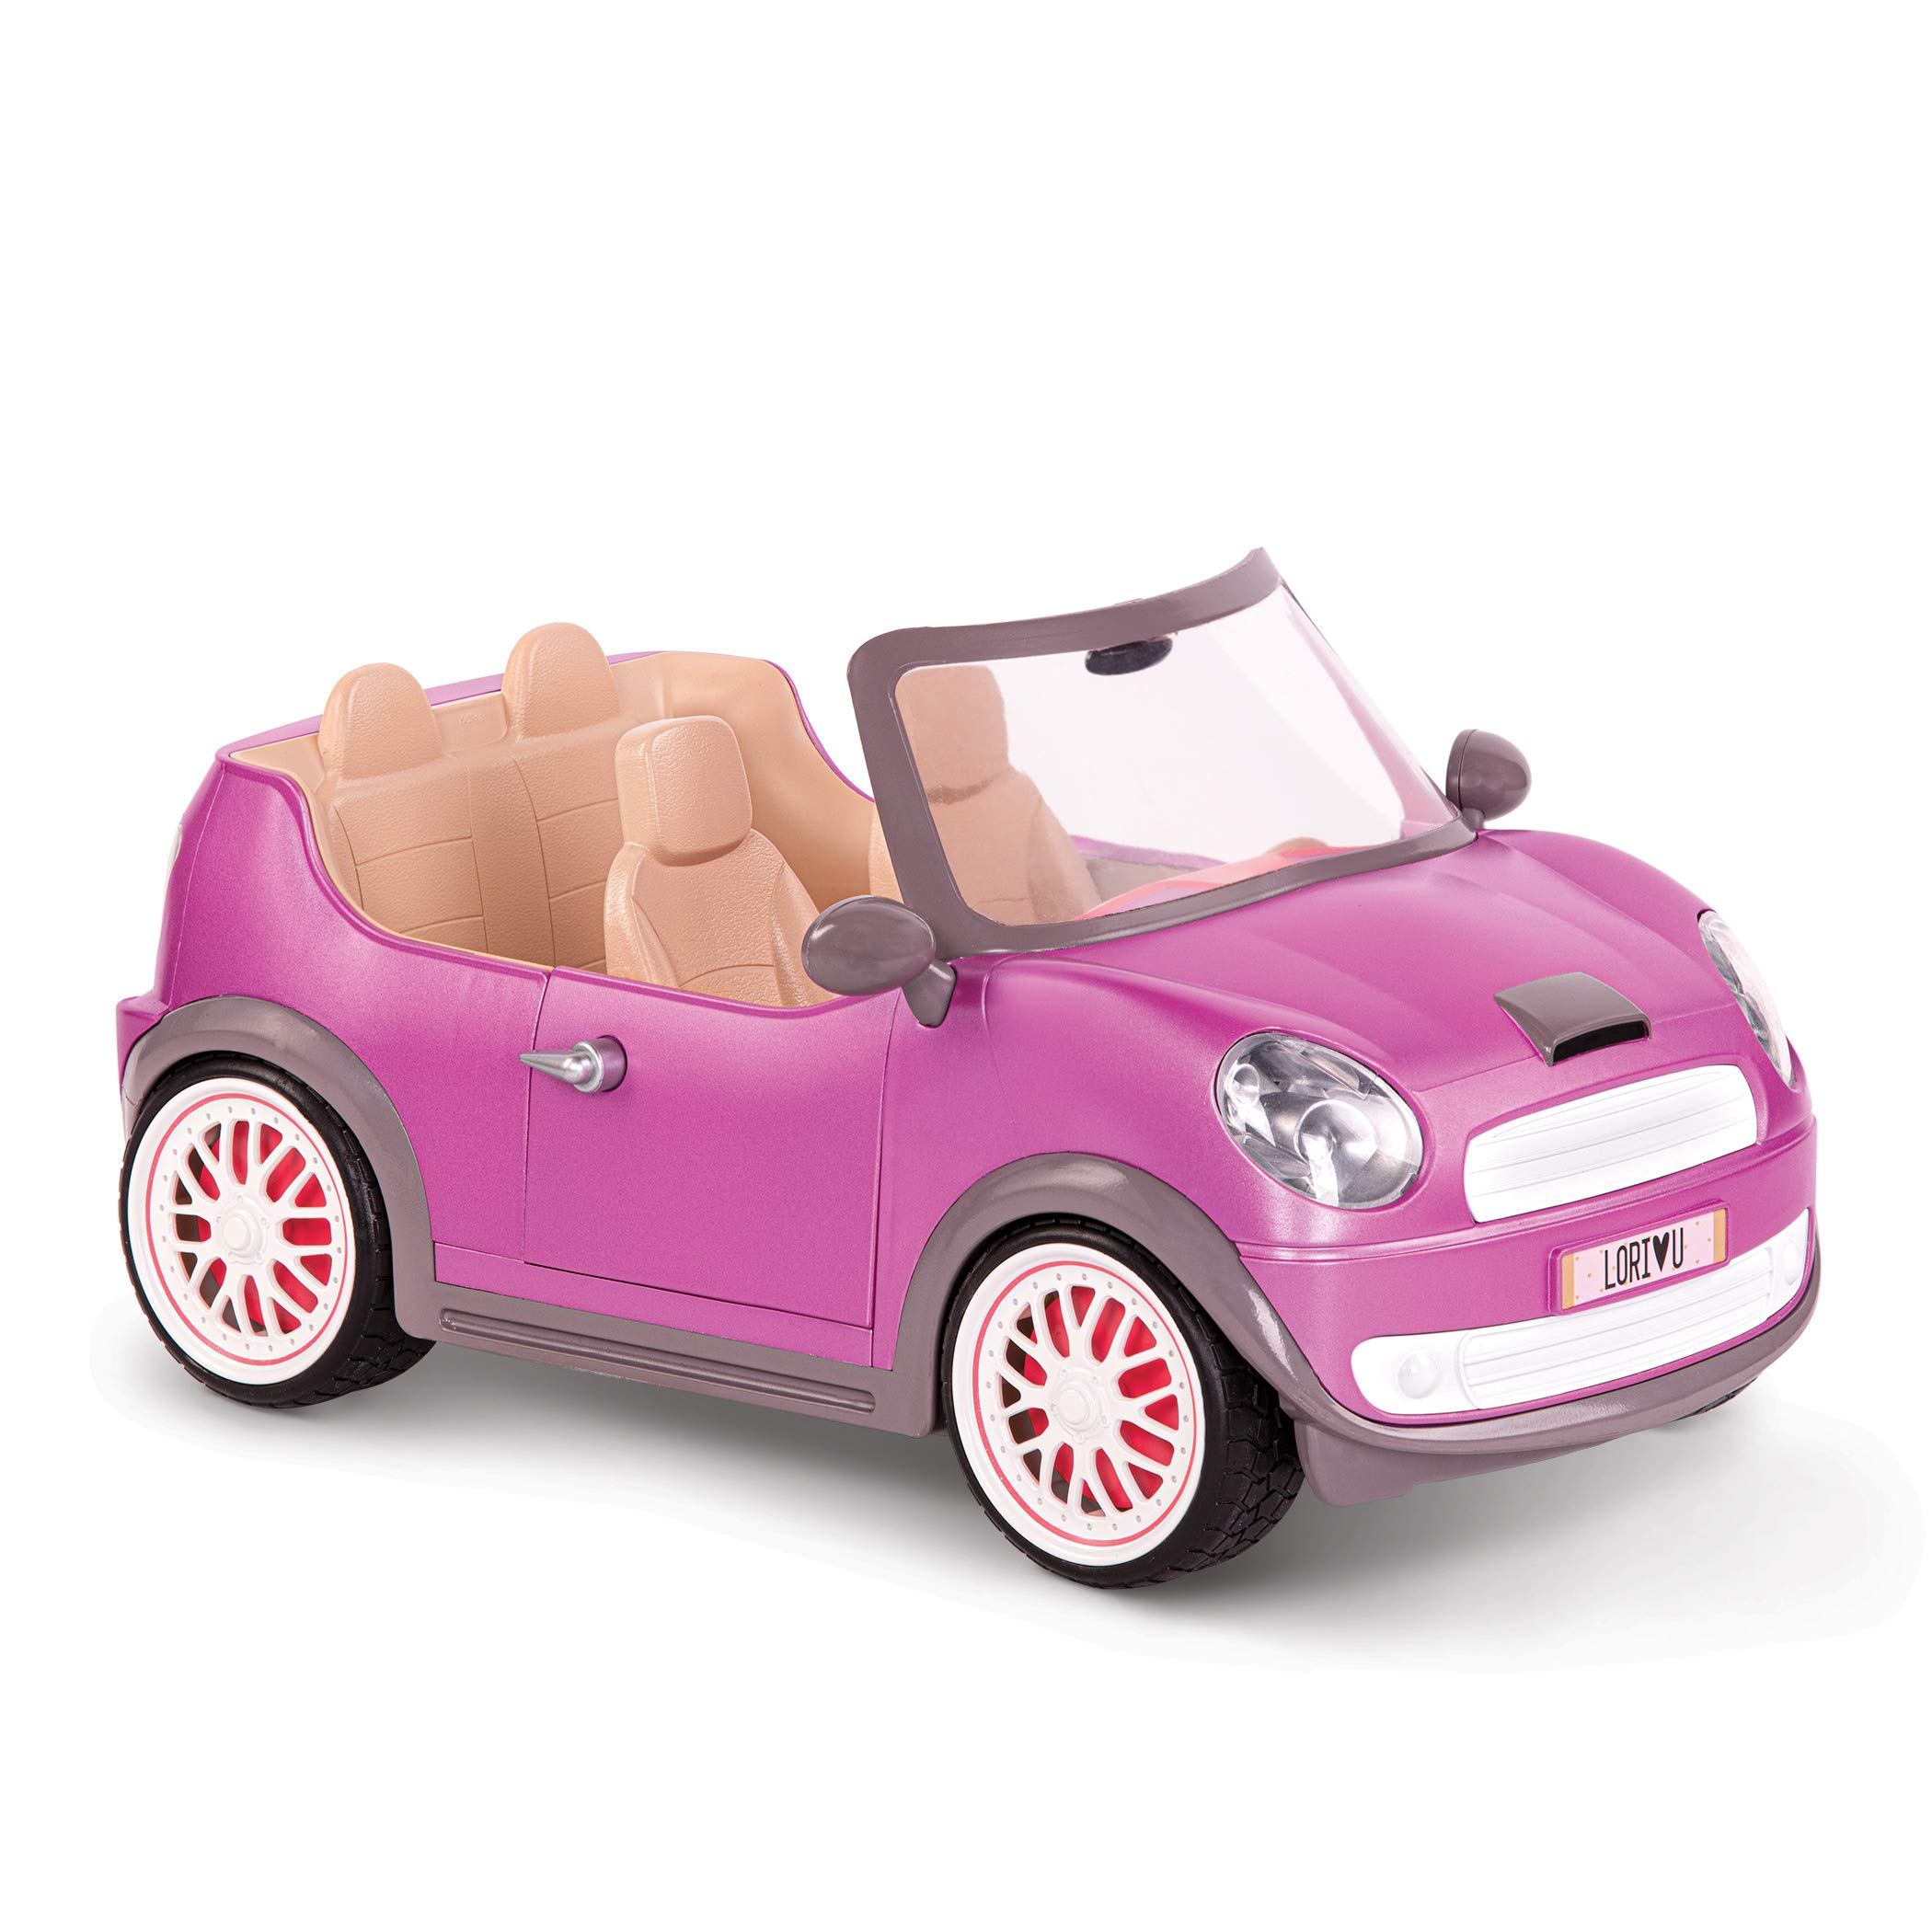 Lori LO37064Z Cabrio in pink, Zubehör für Puppe 15cm, Puppenauto, Fahrzeug, Mini Cooper, weiß, rosa, 4 Sitzer, Cabriolet, Auto Fahren, mobil, unterwegs, Mehrfarbig